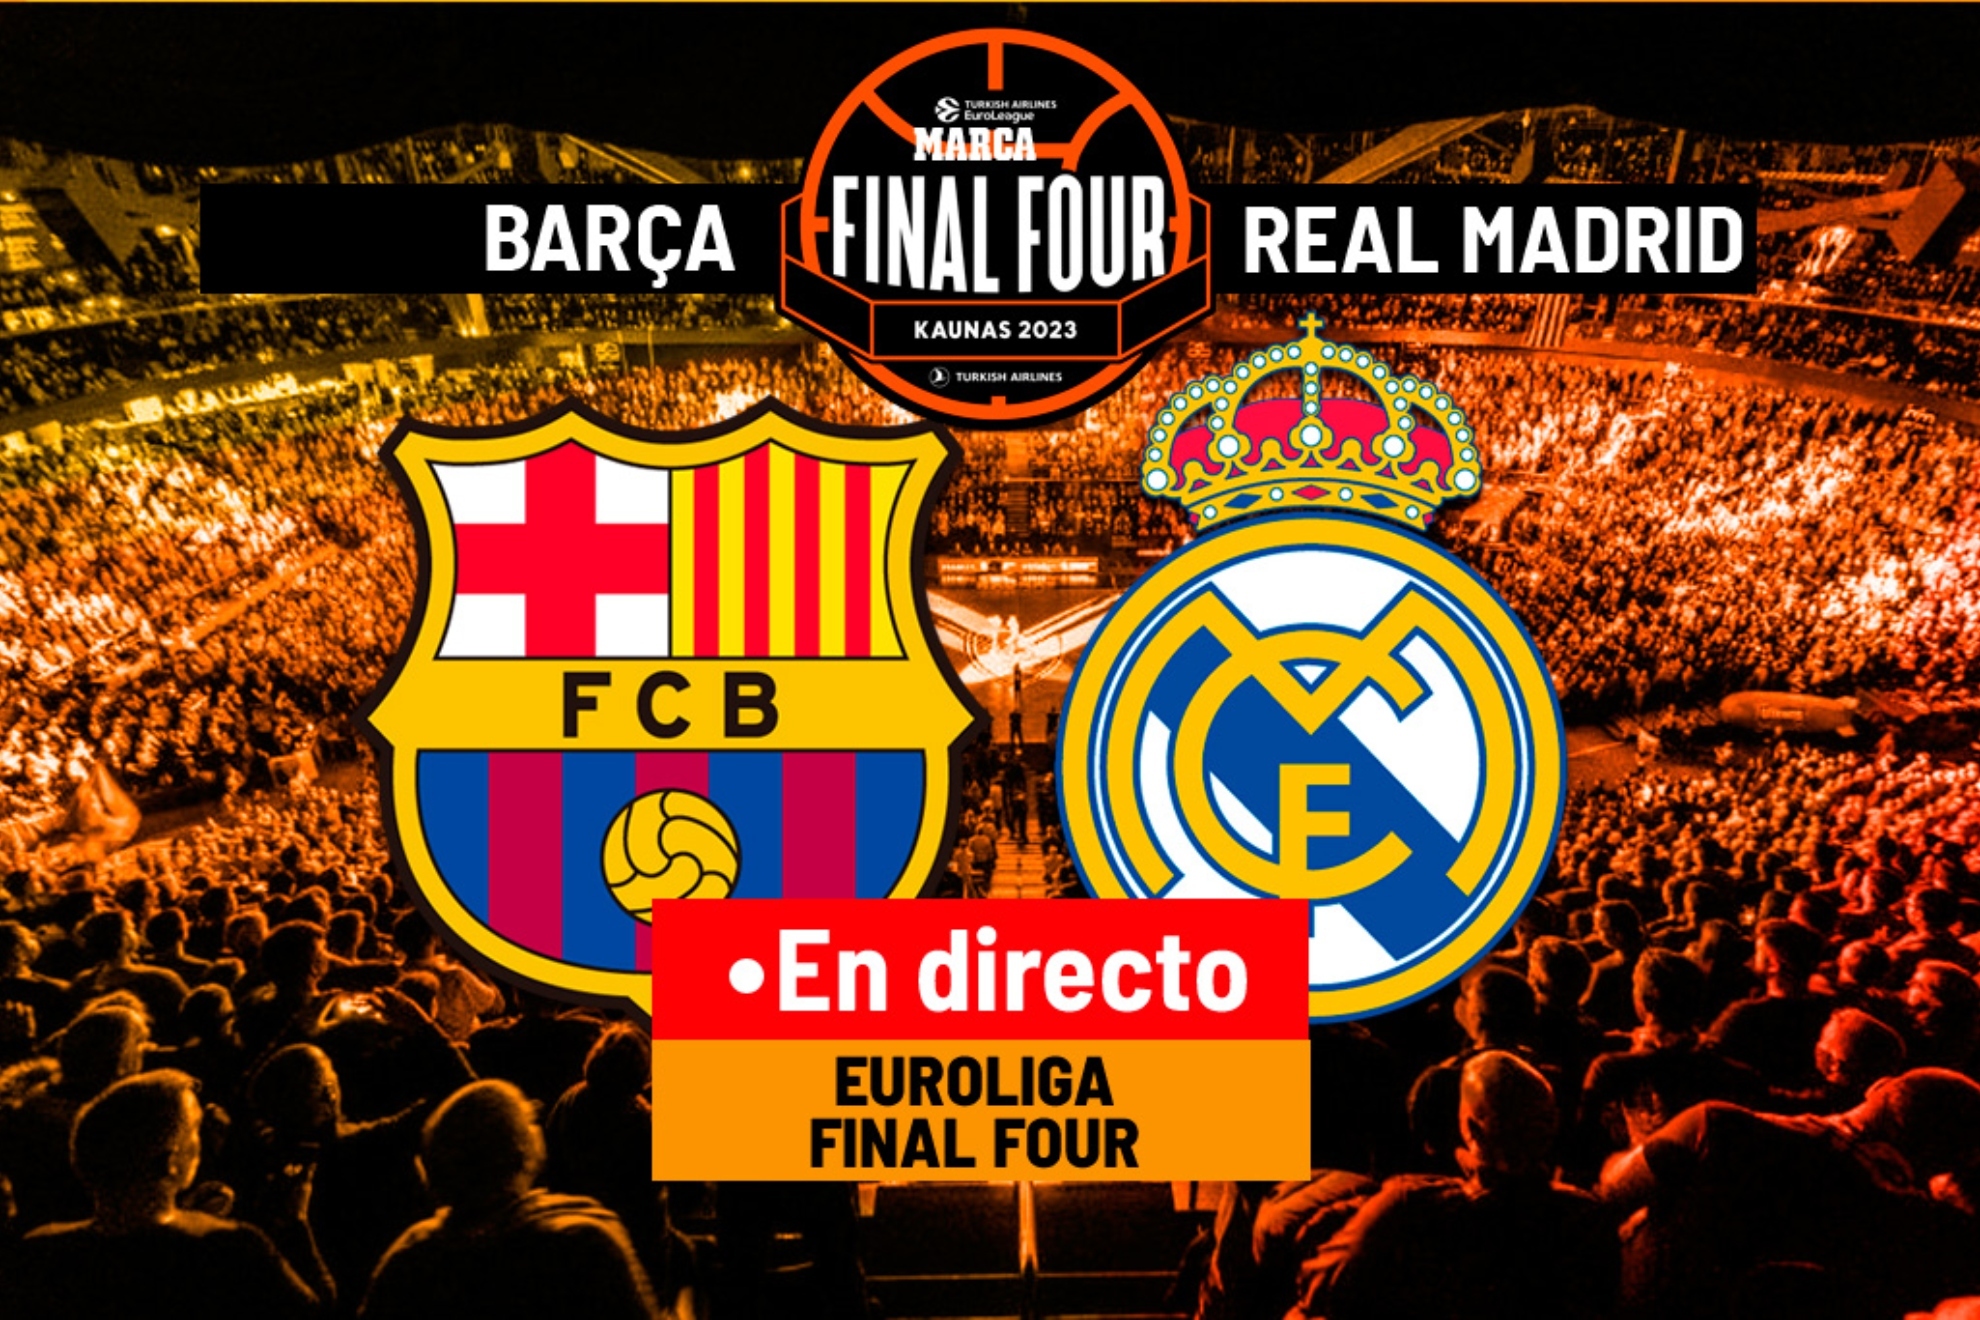 Barcelona - Real Madrid, en directo | Final Four de la Euroliga hoy en vivo